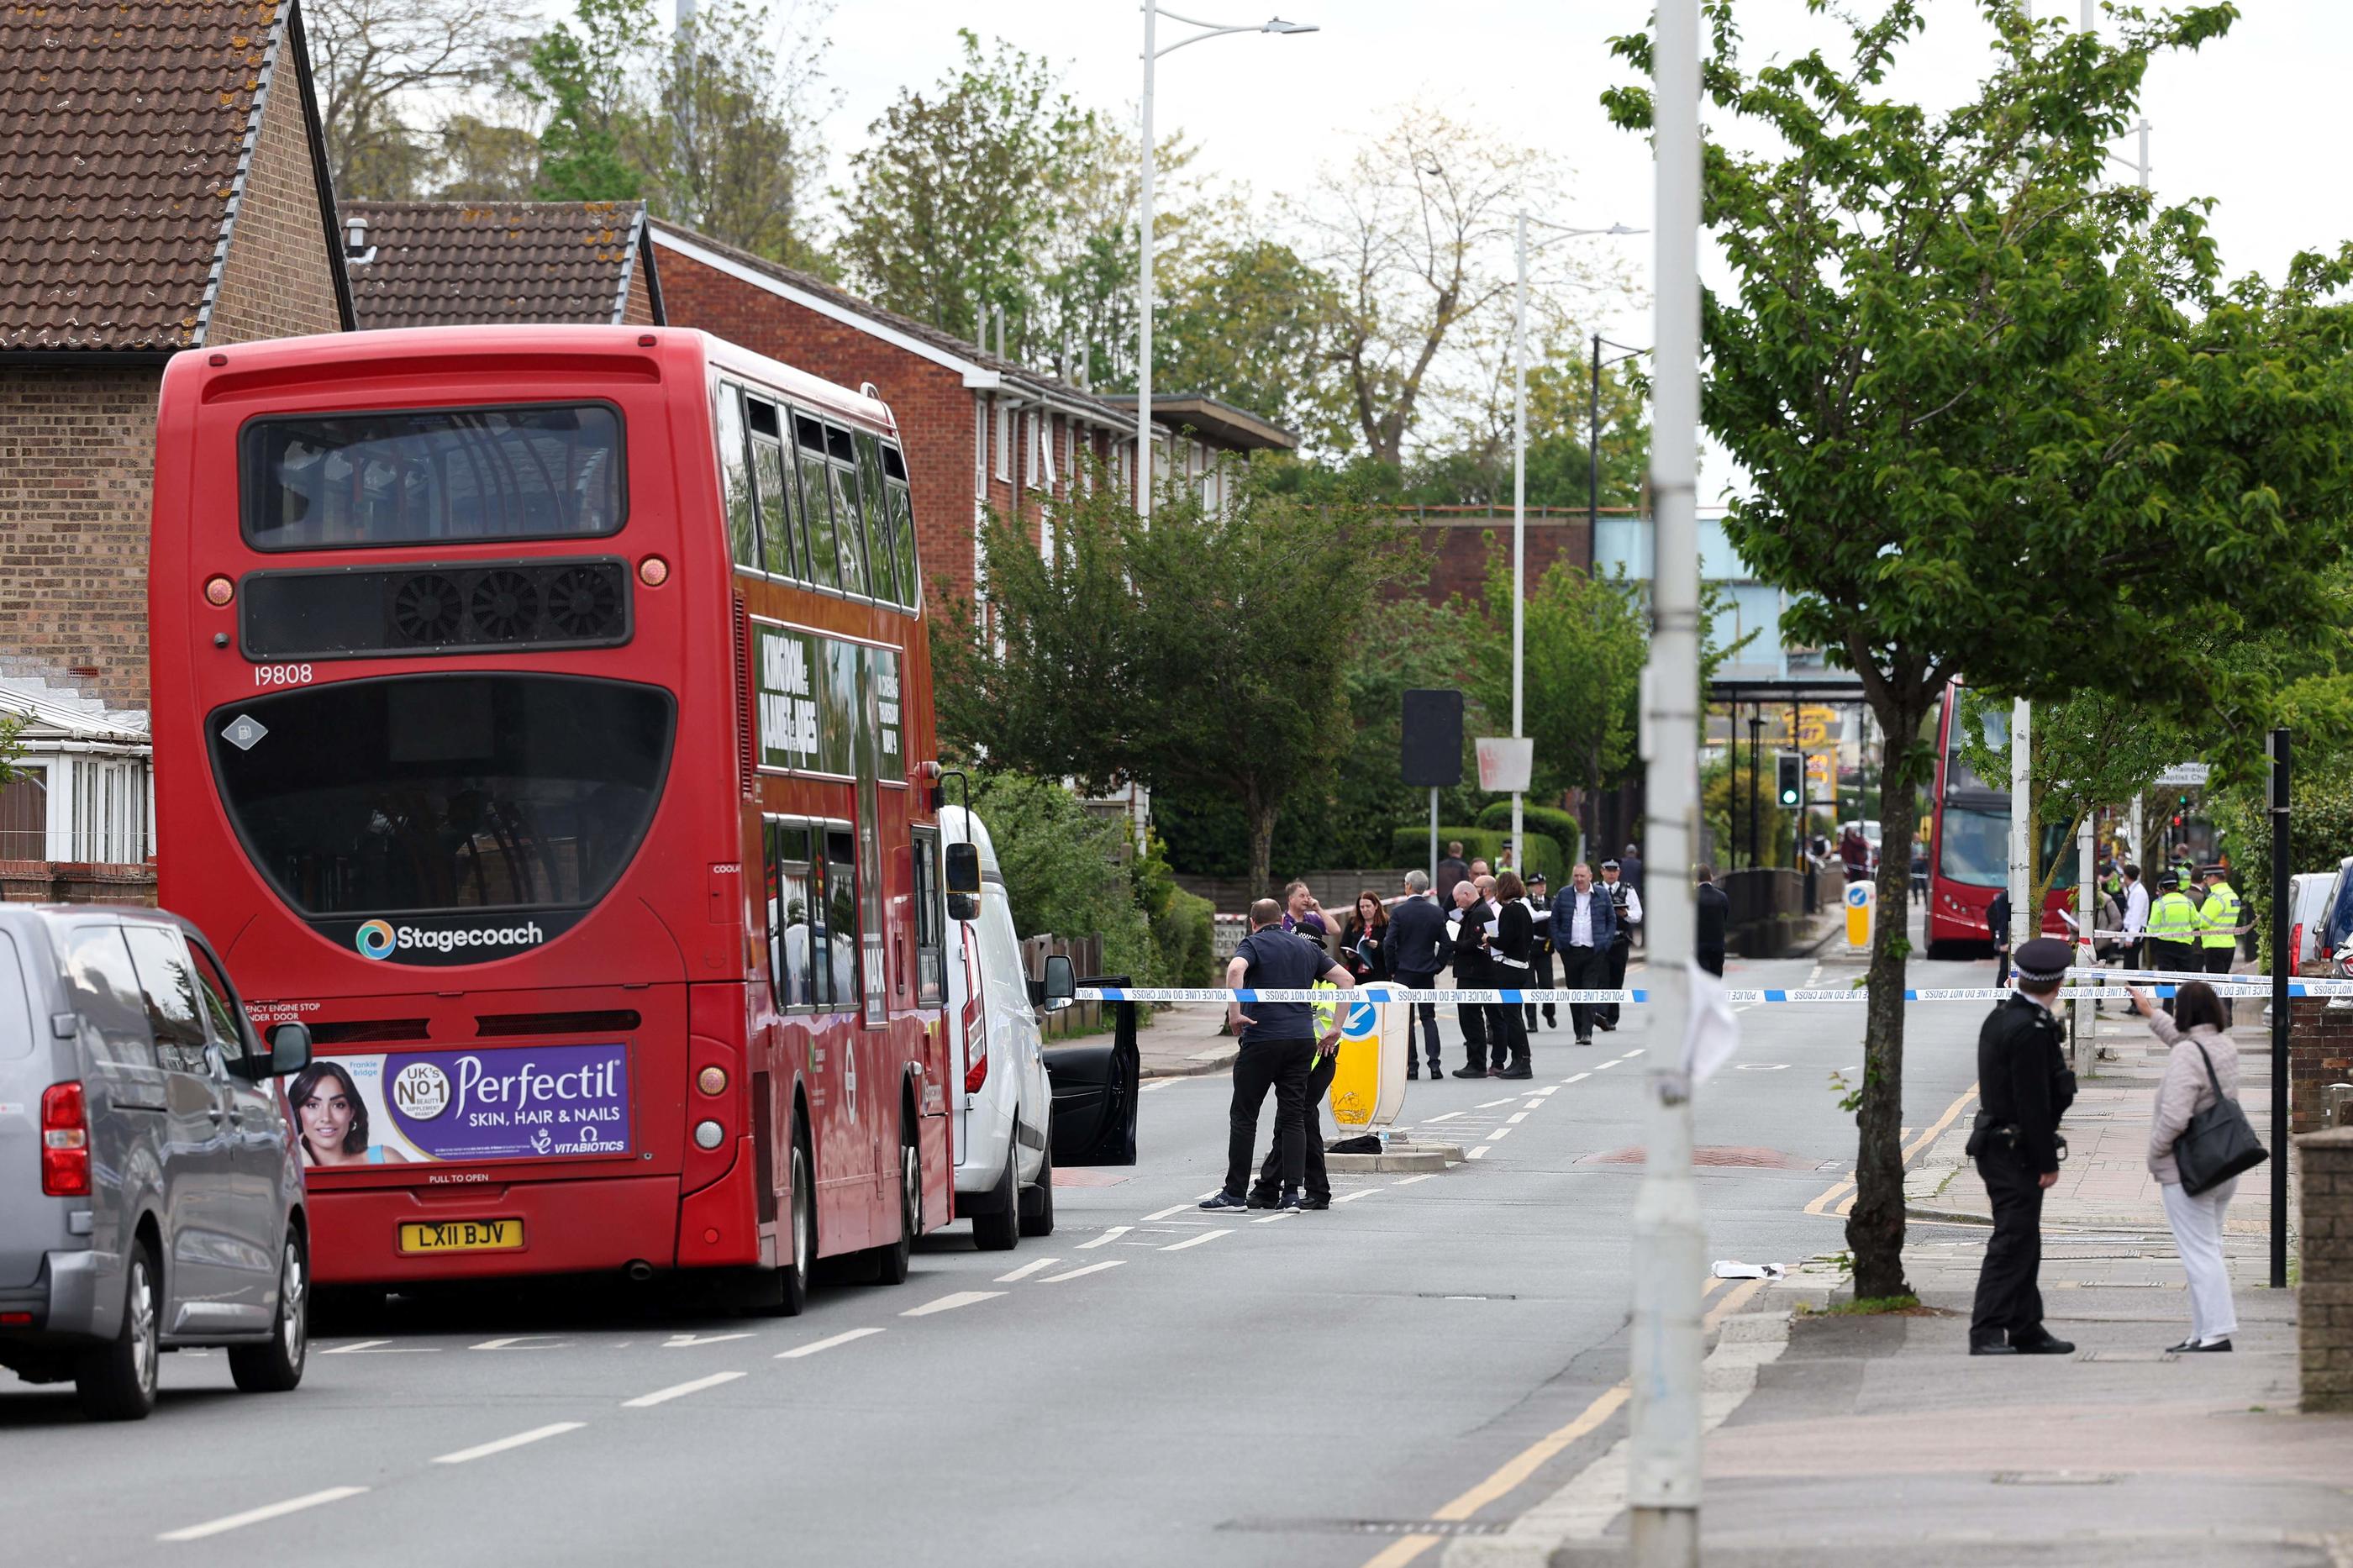 La police métropolitaine de Londres a bouclé le quartier autour de la station de métro du Hainault, où s'est passée l'attaque. AFP/Adrian Dennis